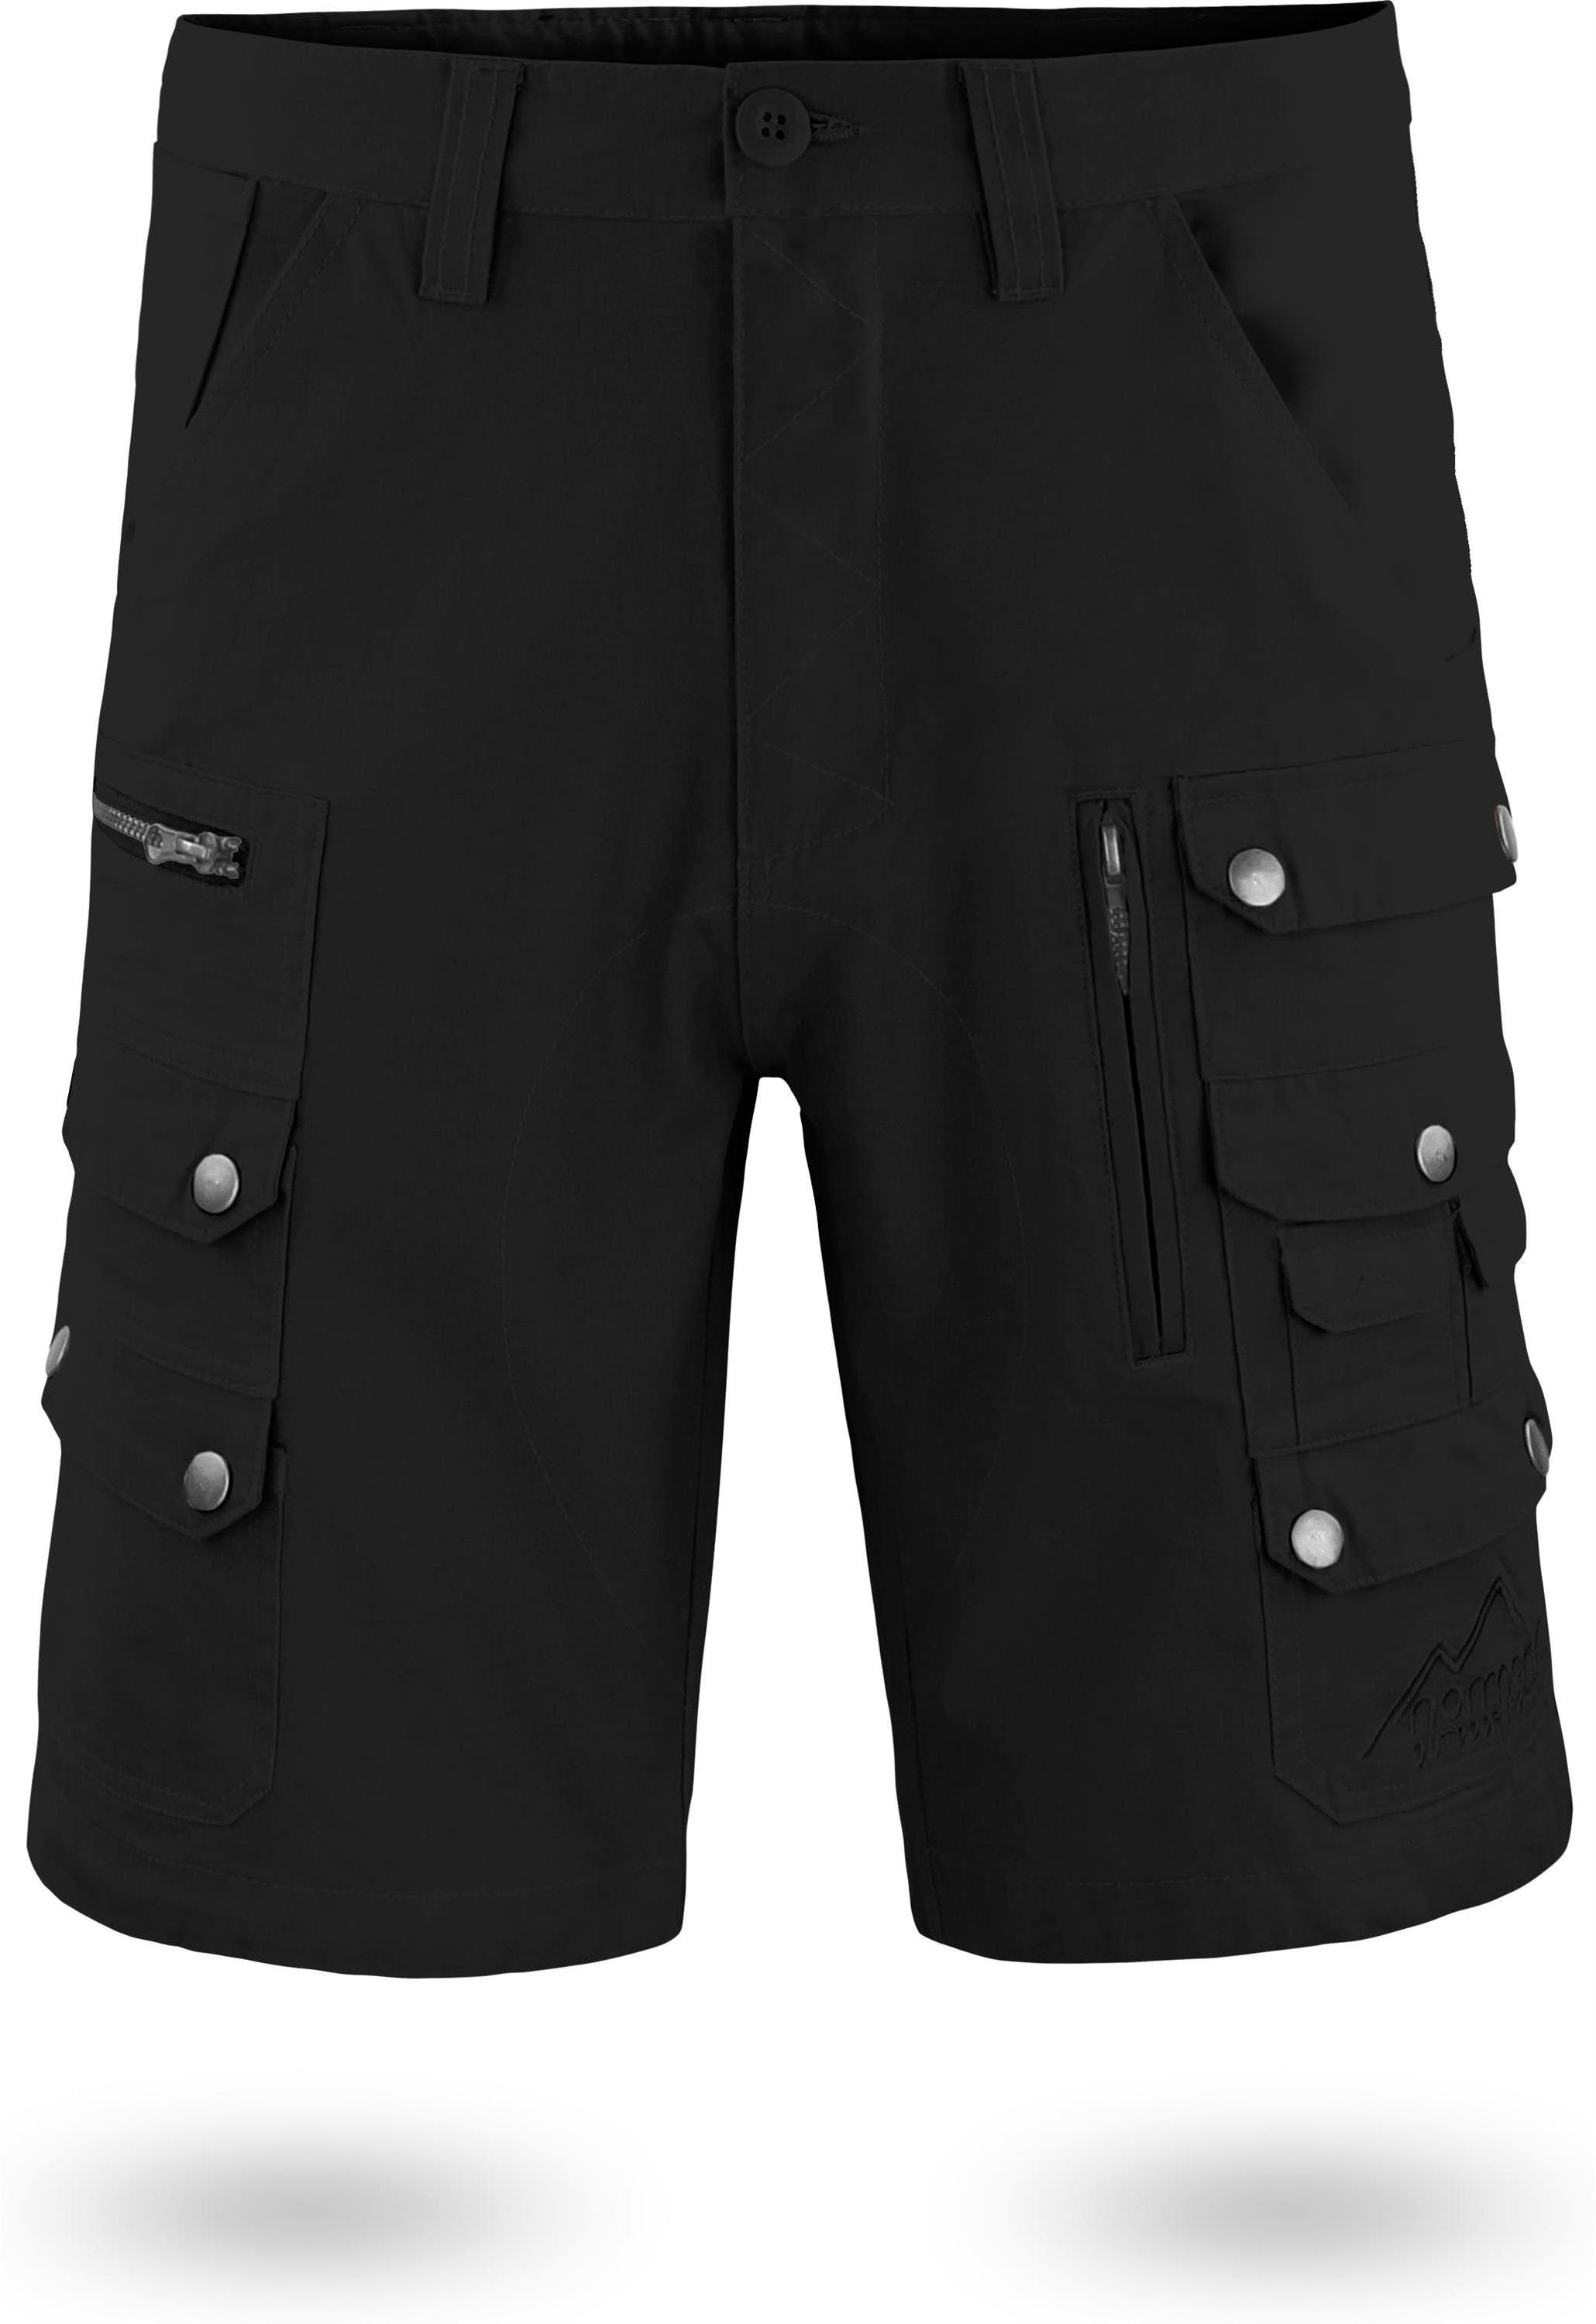 normani Bermudas Herren diversen 100% Cargo-Shorts Sommershorts mit Taschen Shorts Bio-Baumwolle Mojave aus kurze Arbeitsshorts Schwarz